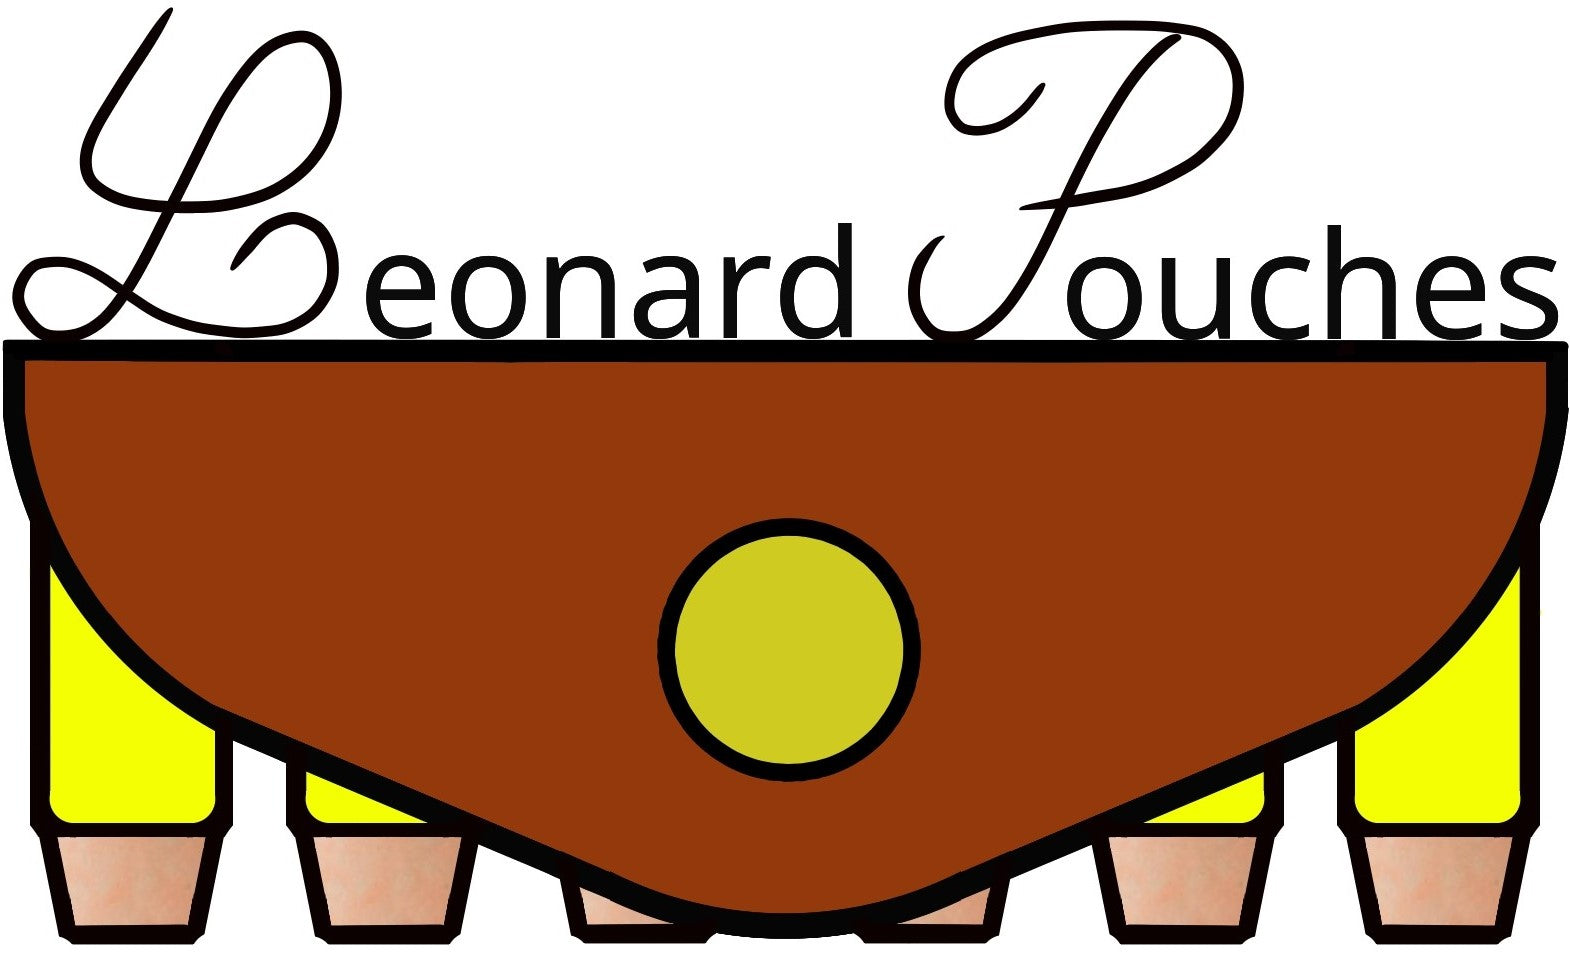 Leonard revolver pouches logo